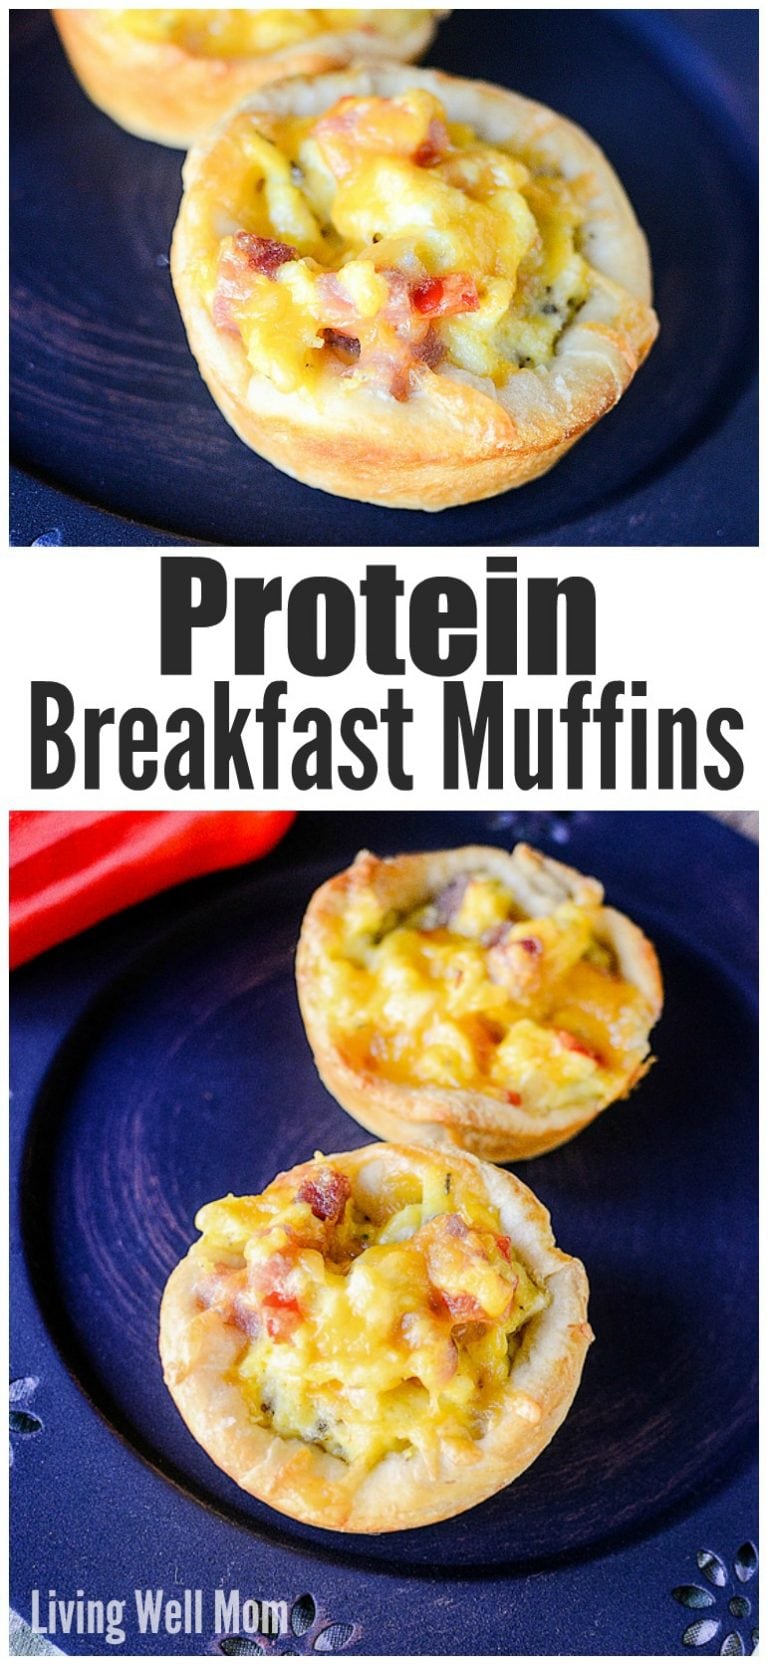 Protein Breakfast Muffins Recipe